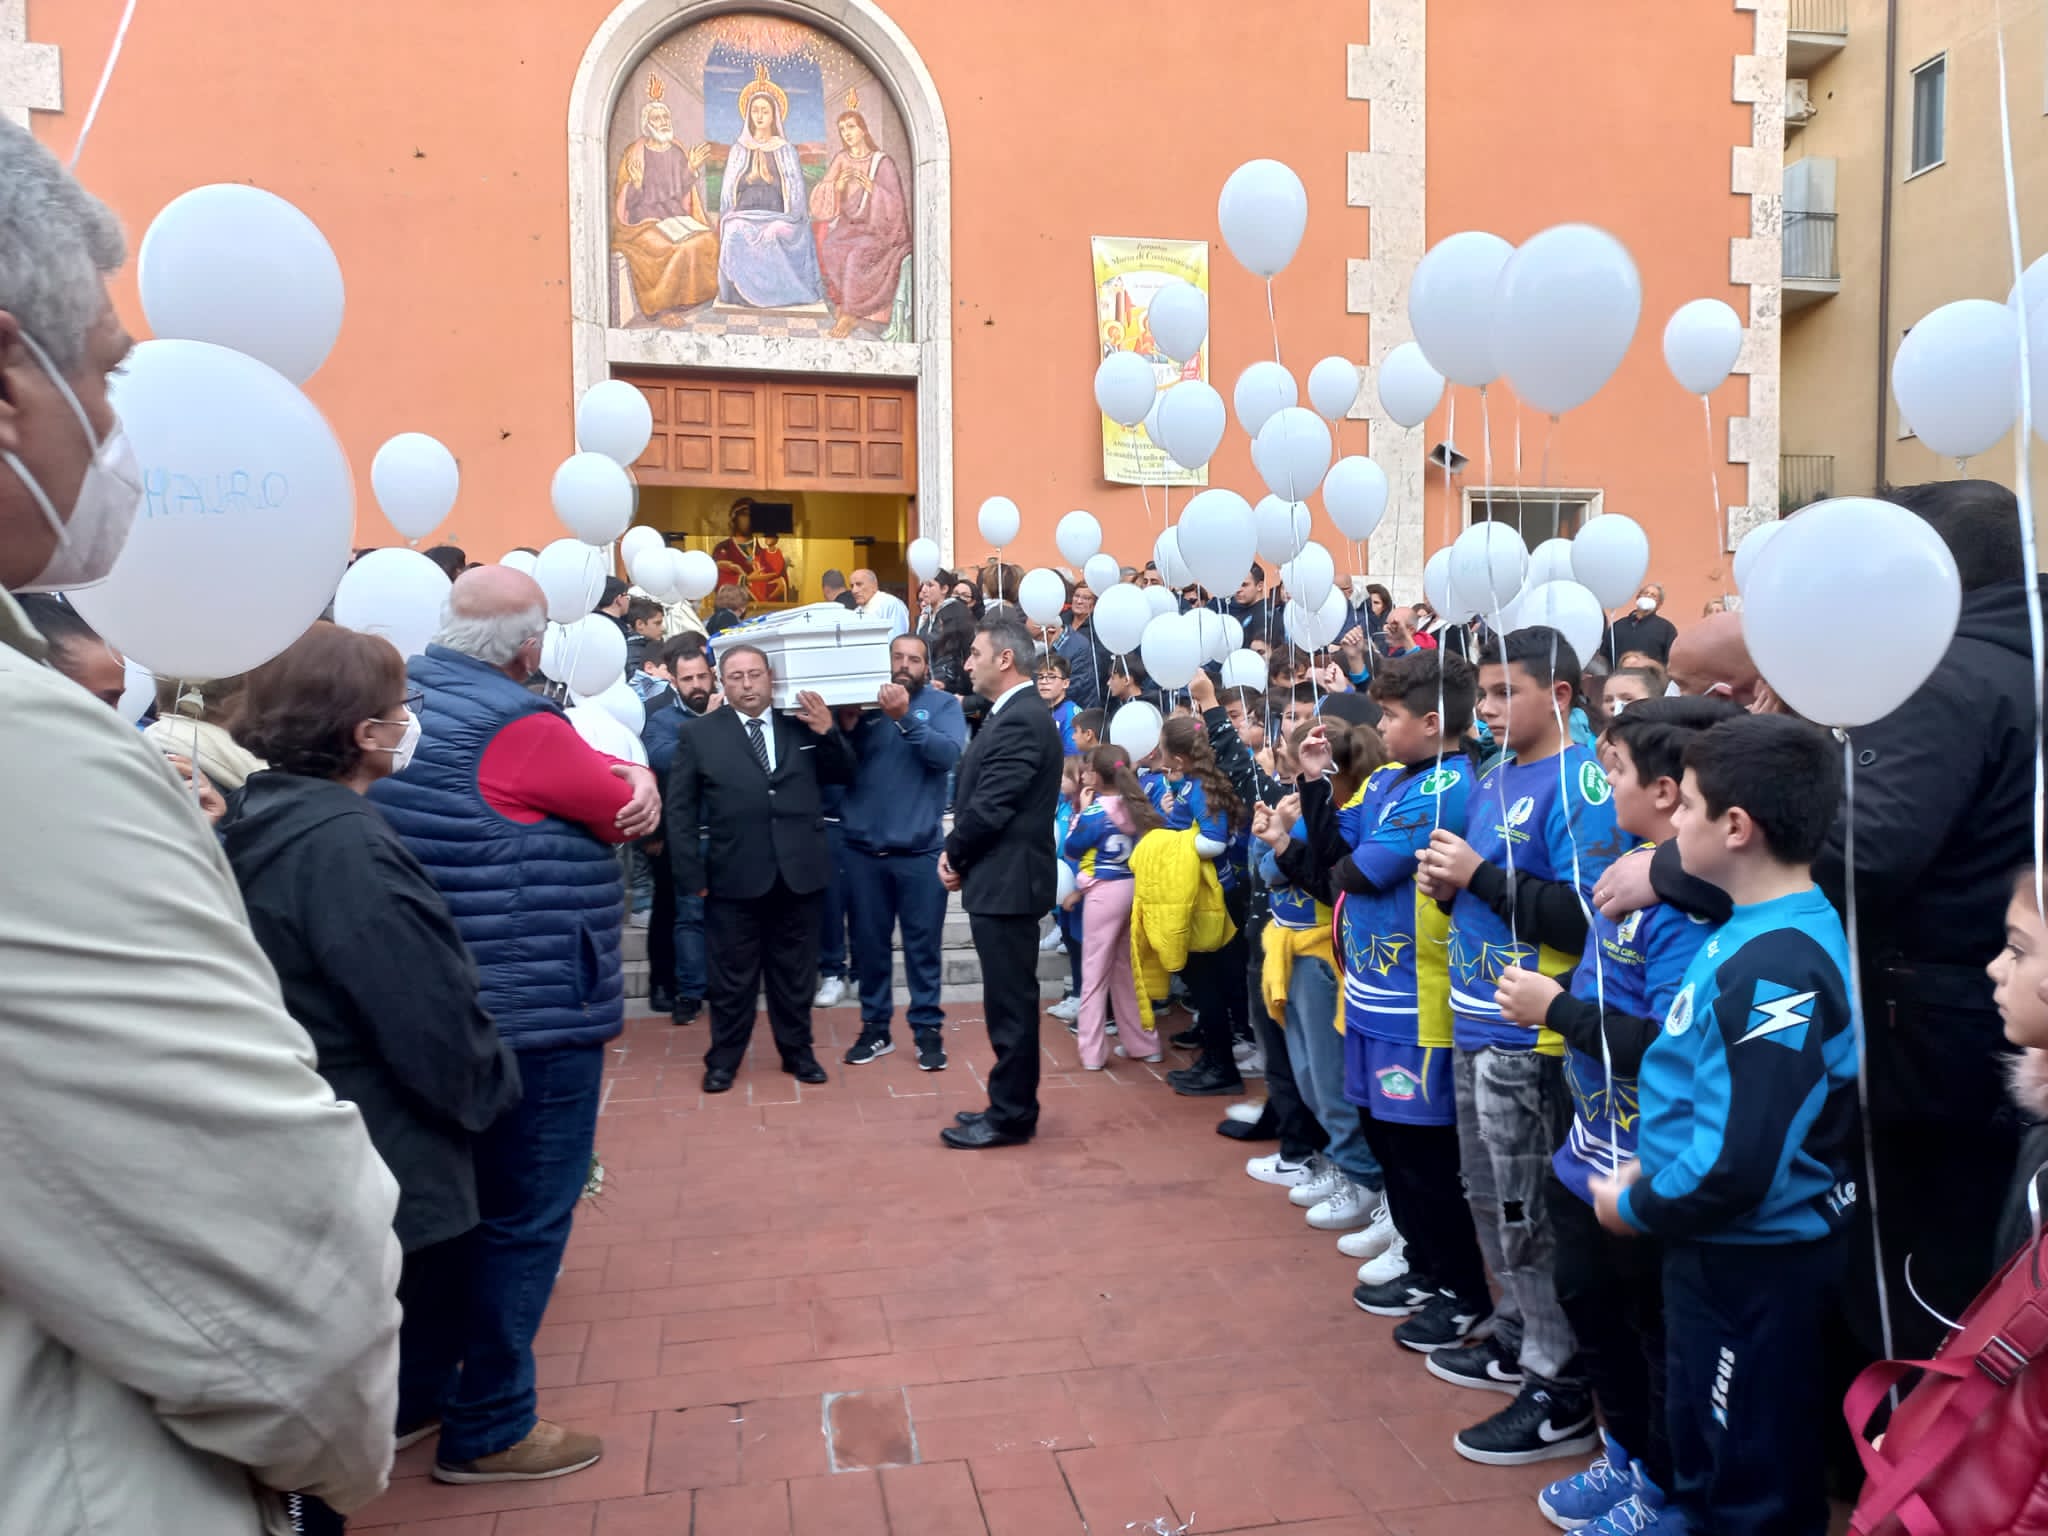 Benevento, una folla commossa per l’ultimo abbraccio a Mauro